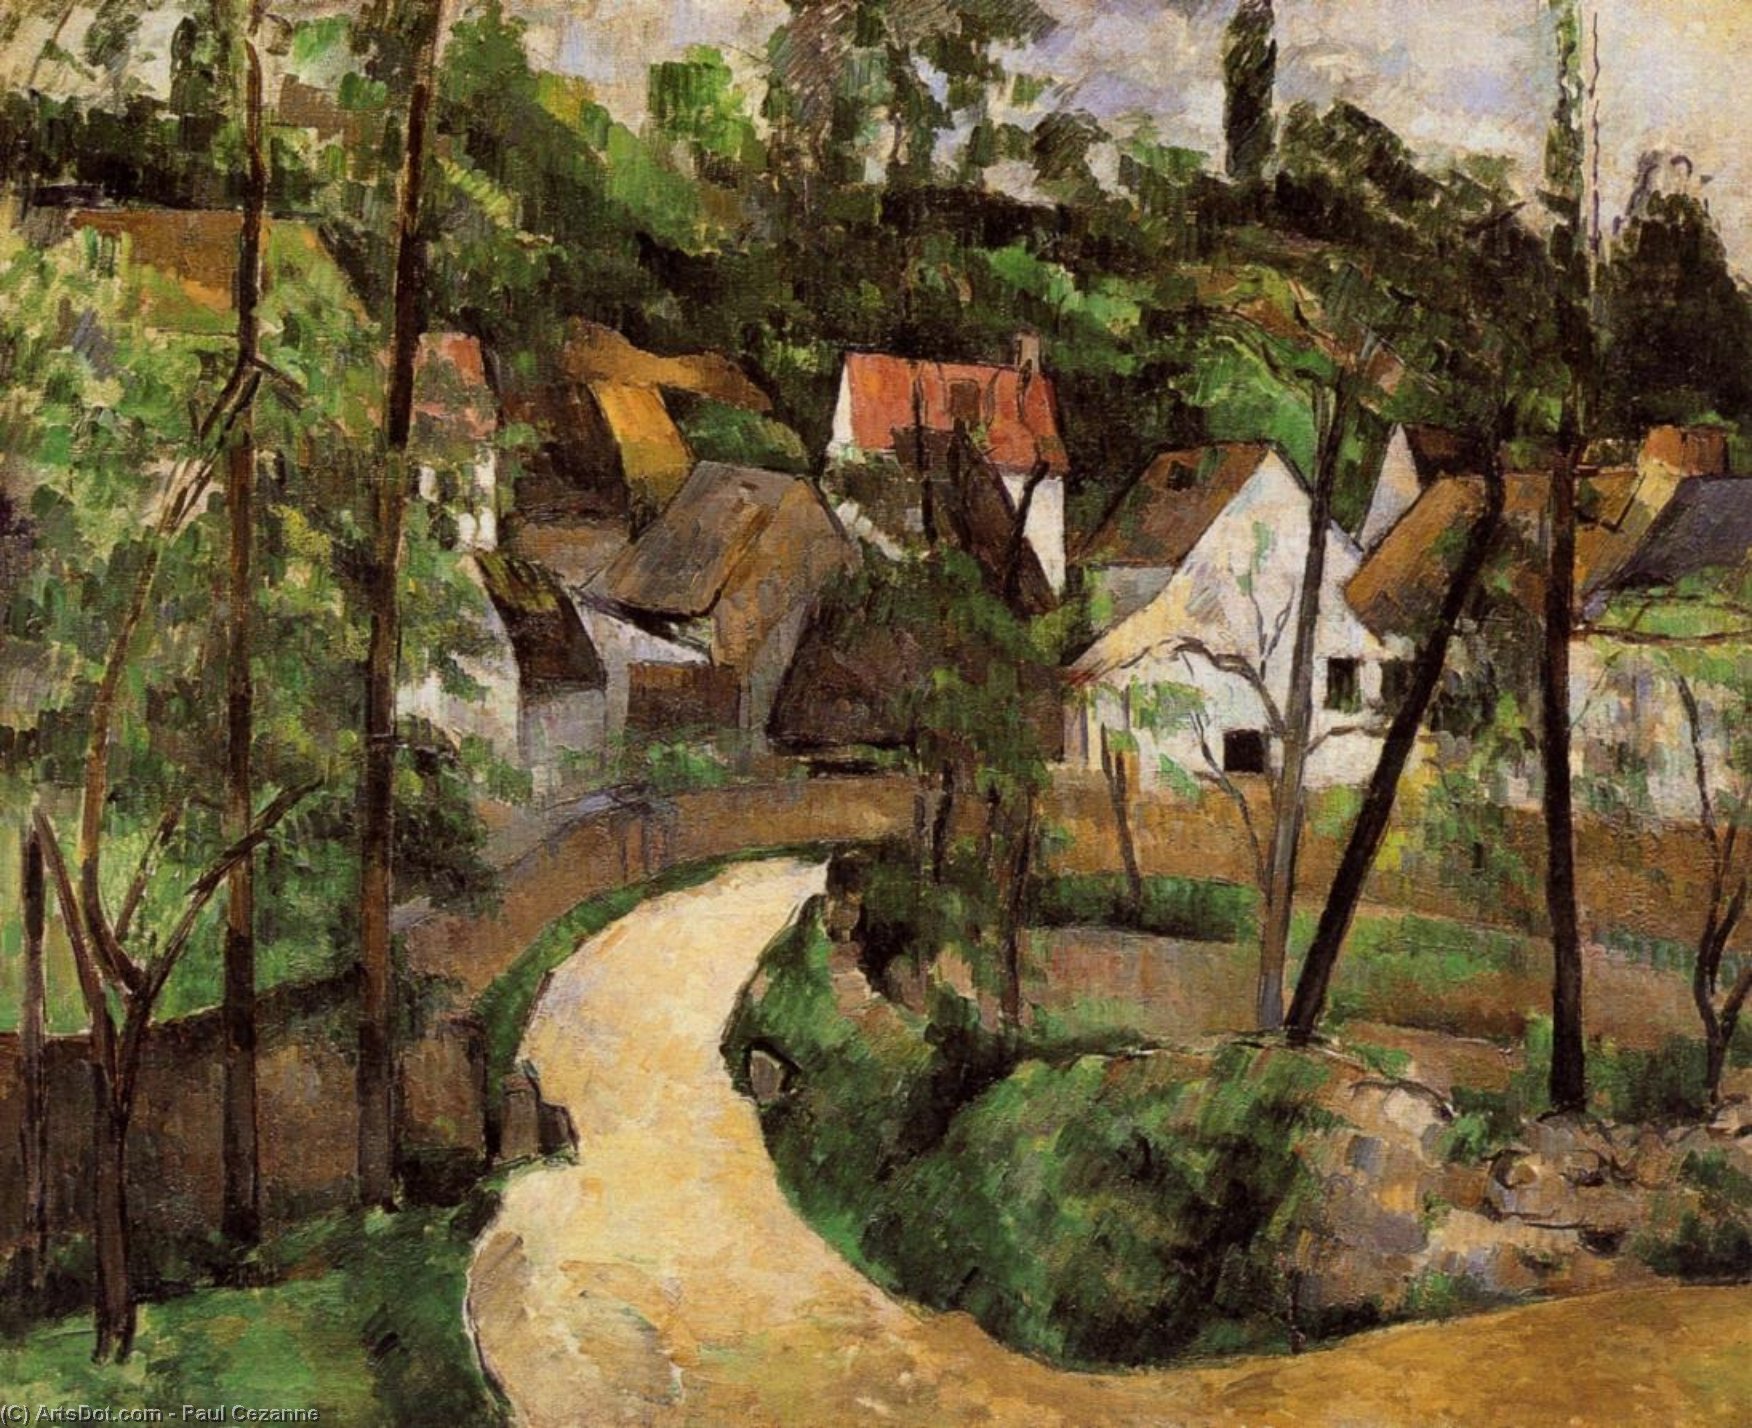 WikiOO.org - Encyclopedia of Fine Arts - Malba, Artwork Paul Cezanne - A Turn in the Road